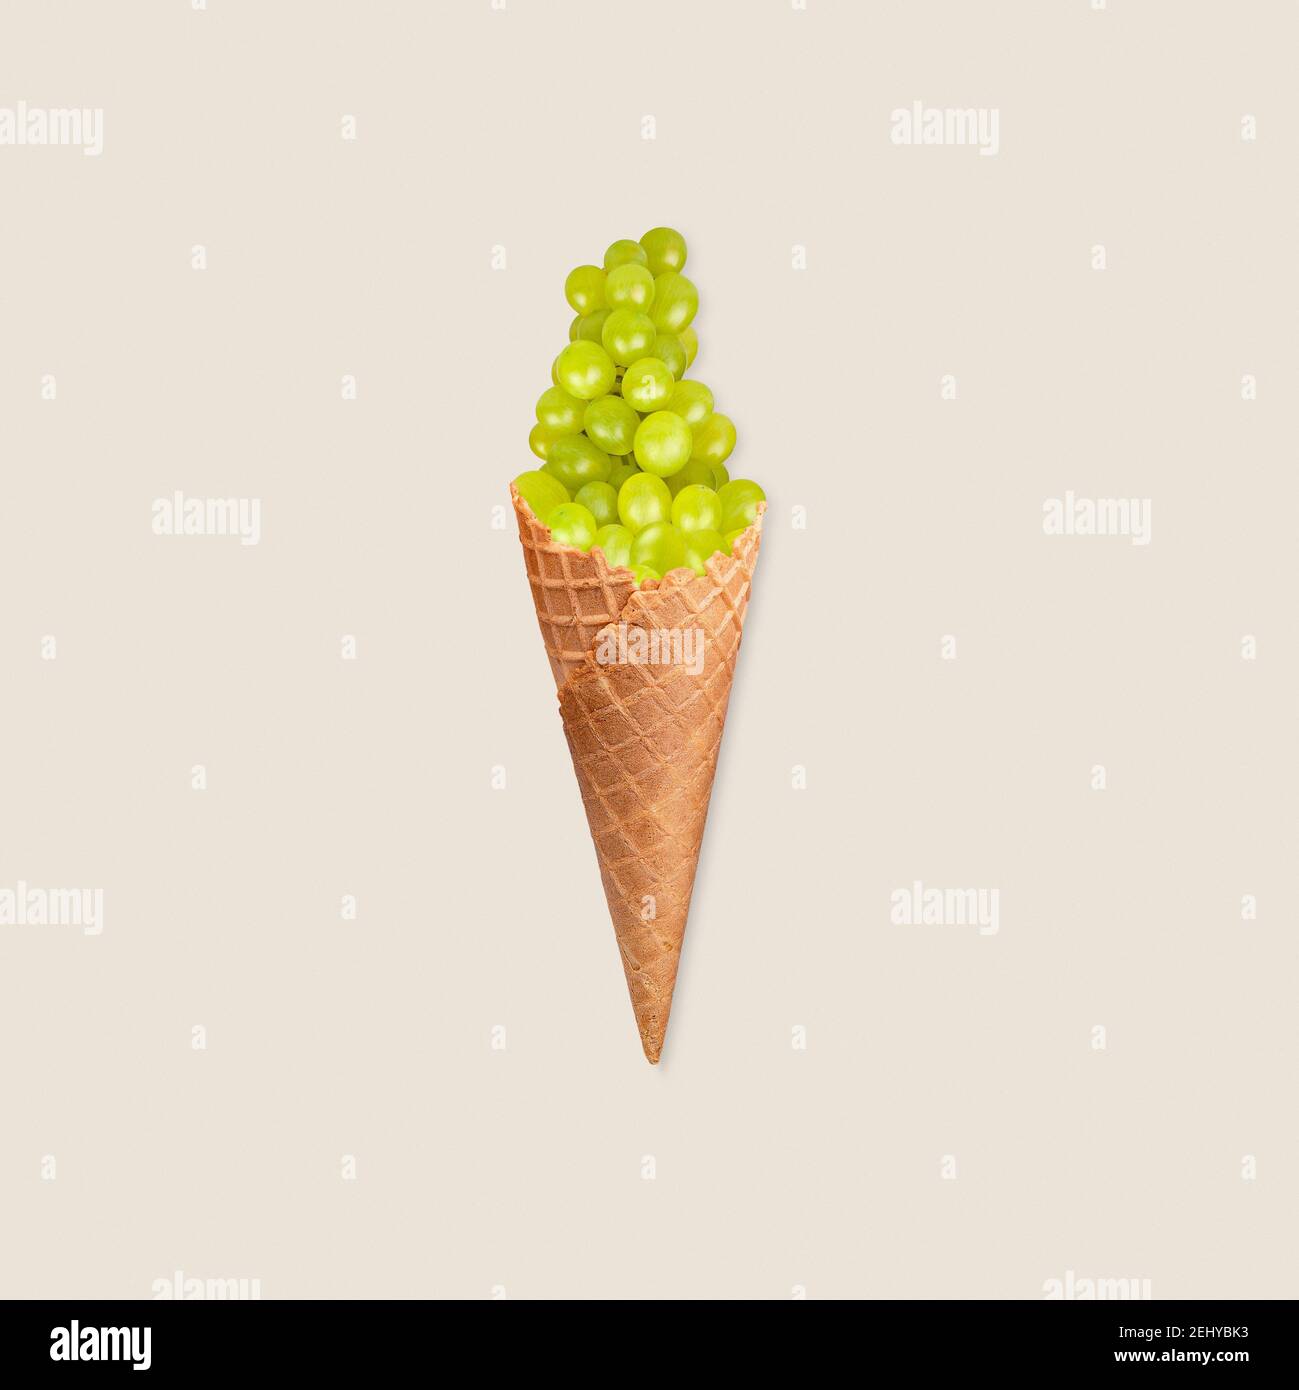 Concepto de alimentación saludable con helado de uva verde fotomanipulación sobre fondo pastel Foto de stock